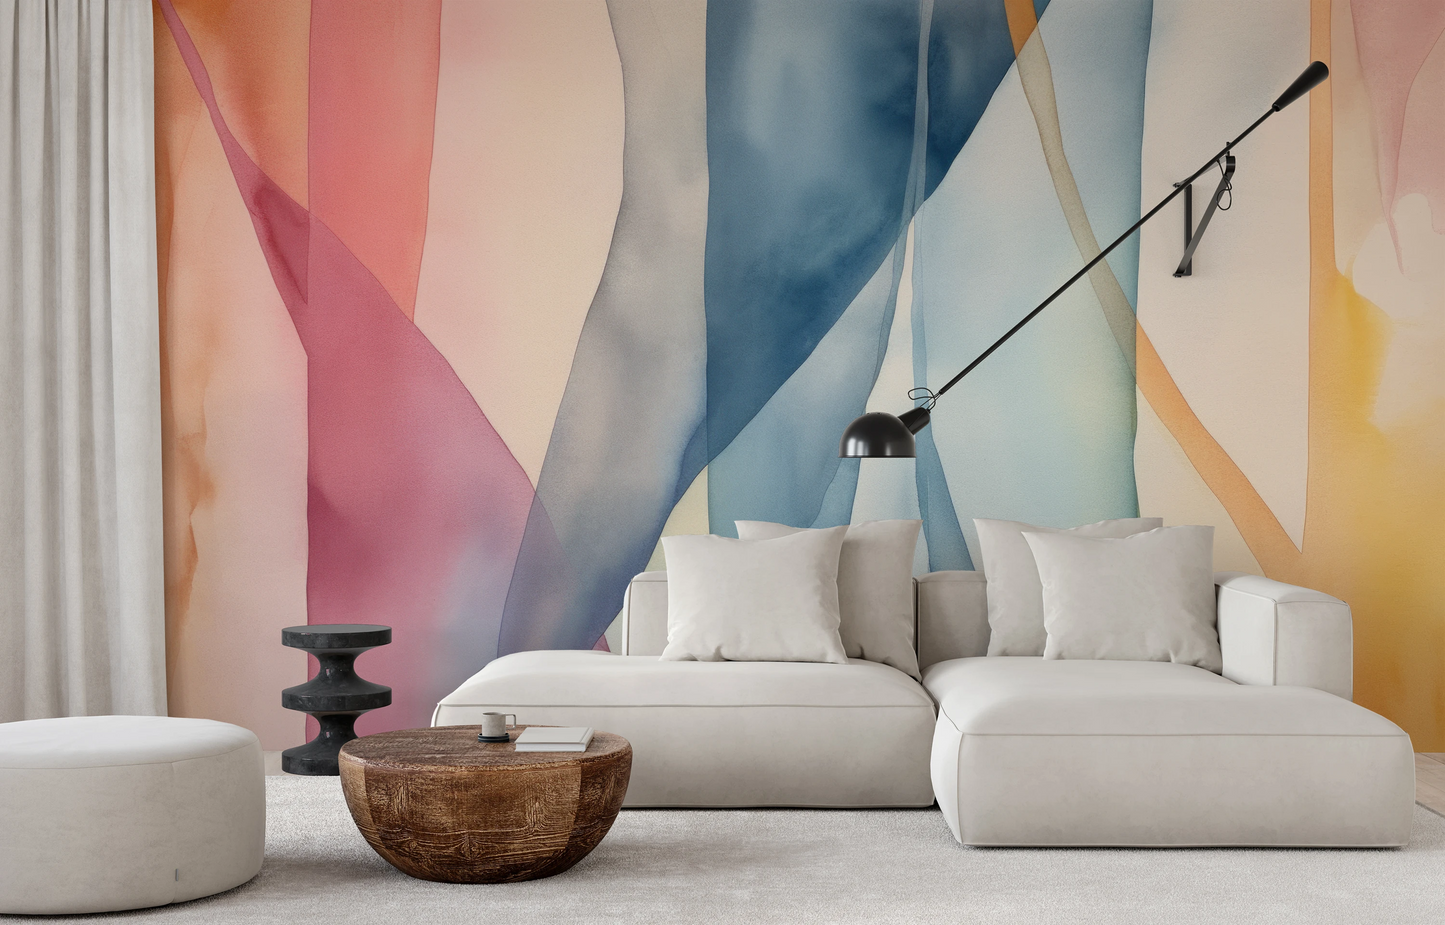 Wzór fototapety artystycznej o nazwie Pastel Dreamscape pokazanej w aranżacji wnętrza.